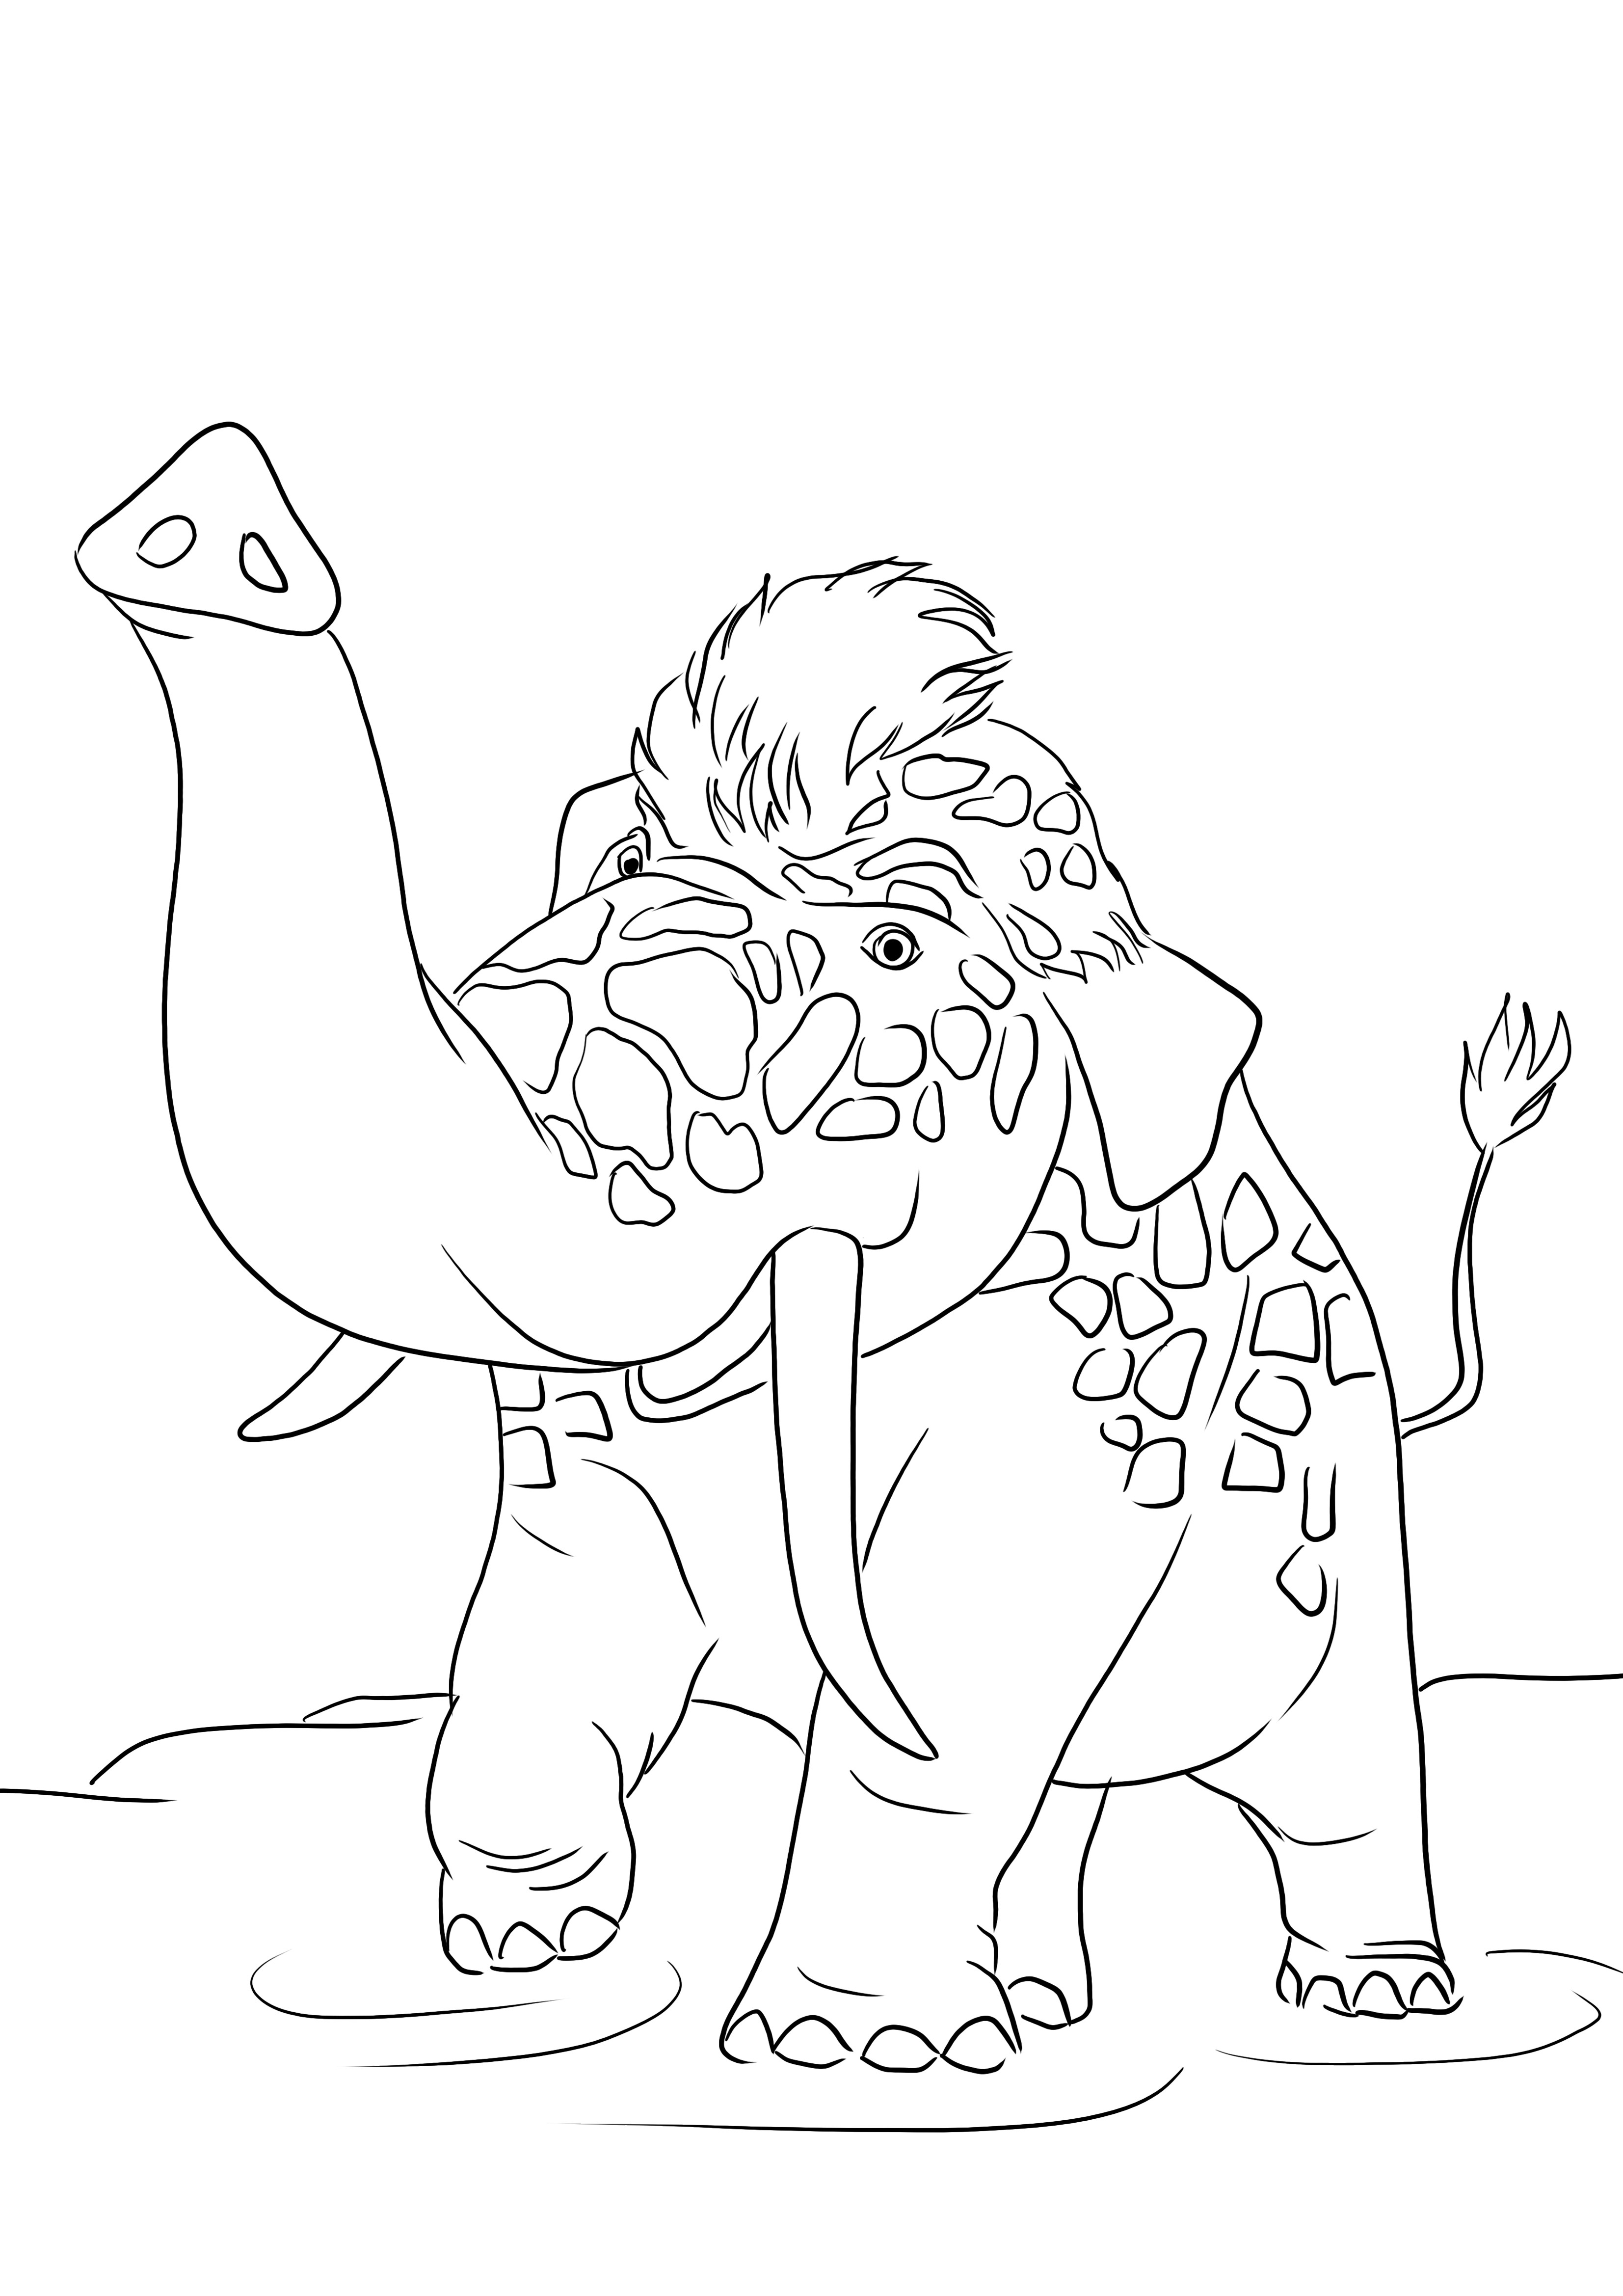 Uma nova imagem para colorir do desenho animado Girelephant dos Croods para imprimir gratuitamente